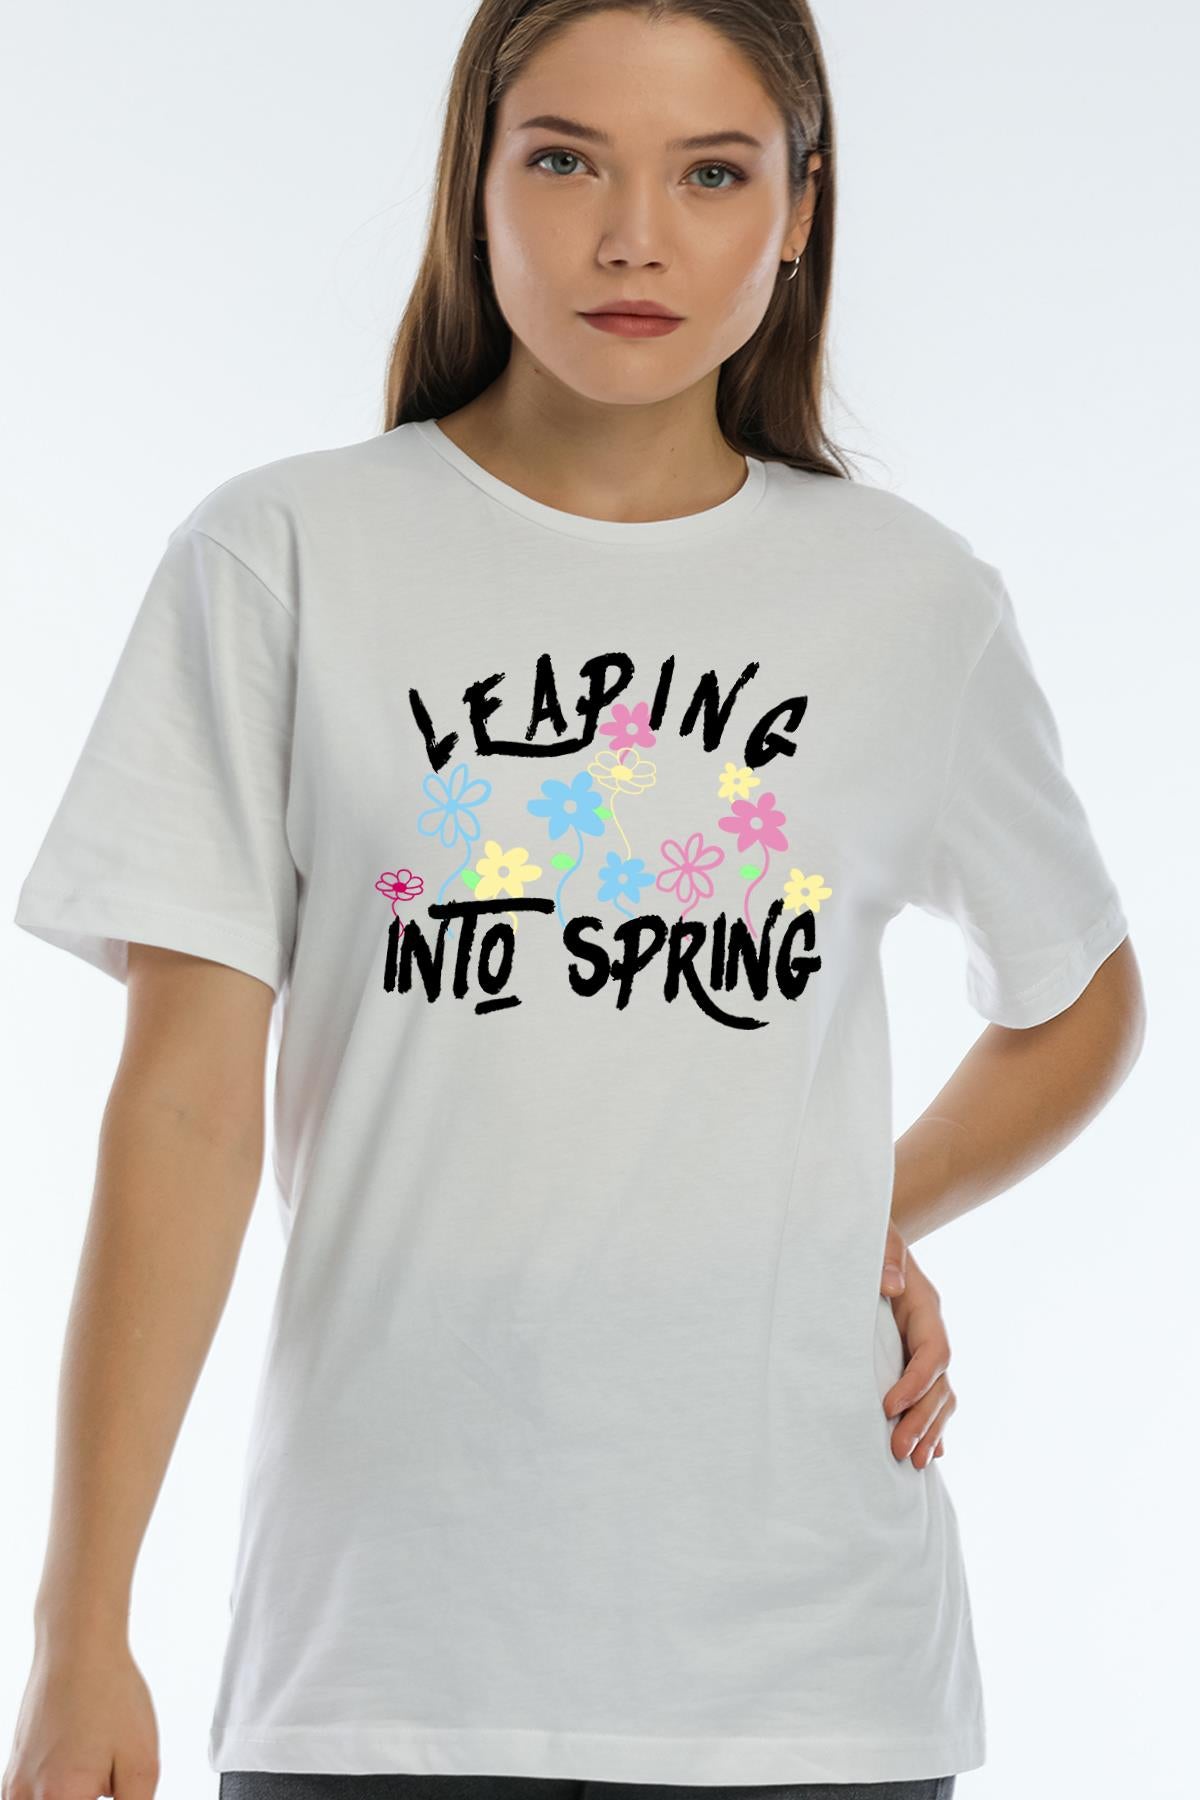 Bisiklet Yaka Leaping into Spring Baskılı Beyaz Oversize Kadın T-shirt